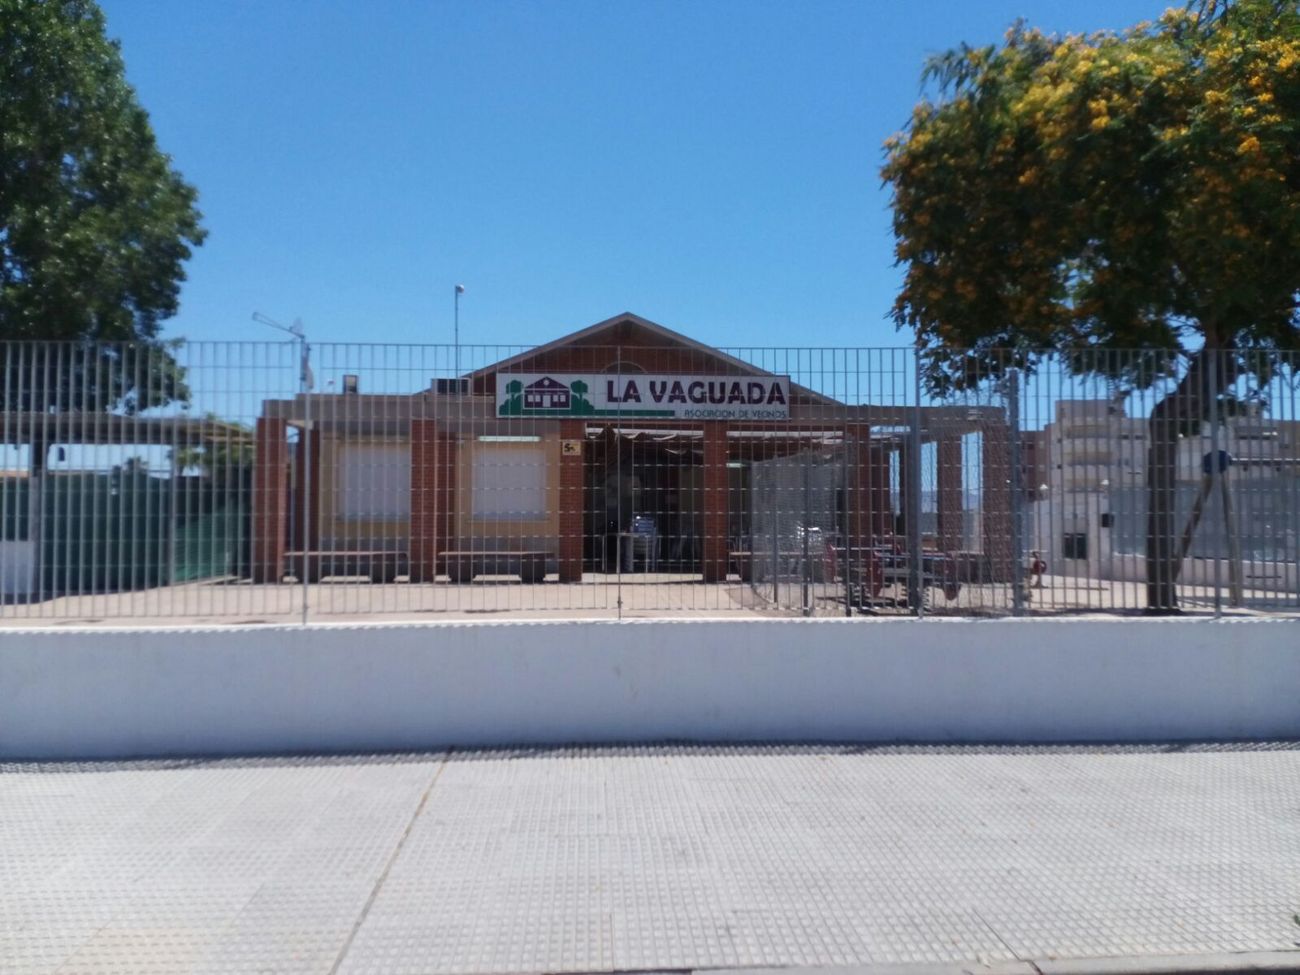 Local Social de La Vaguada